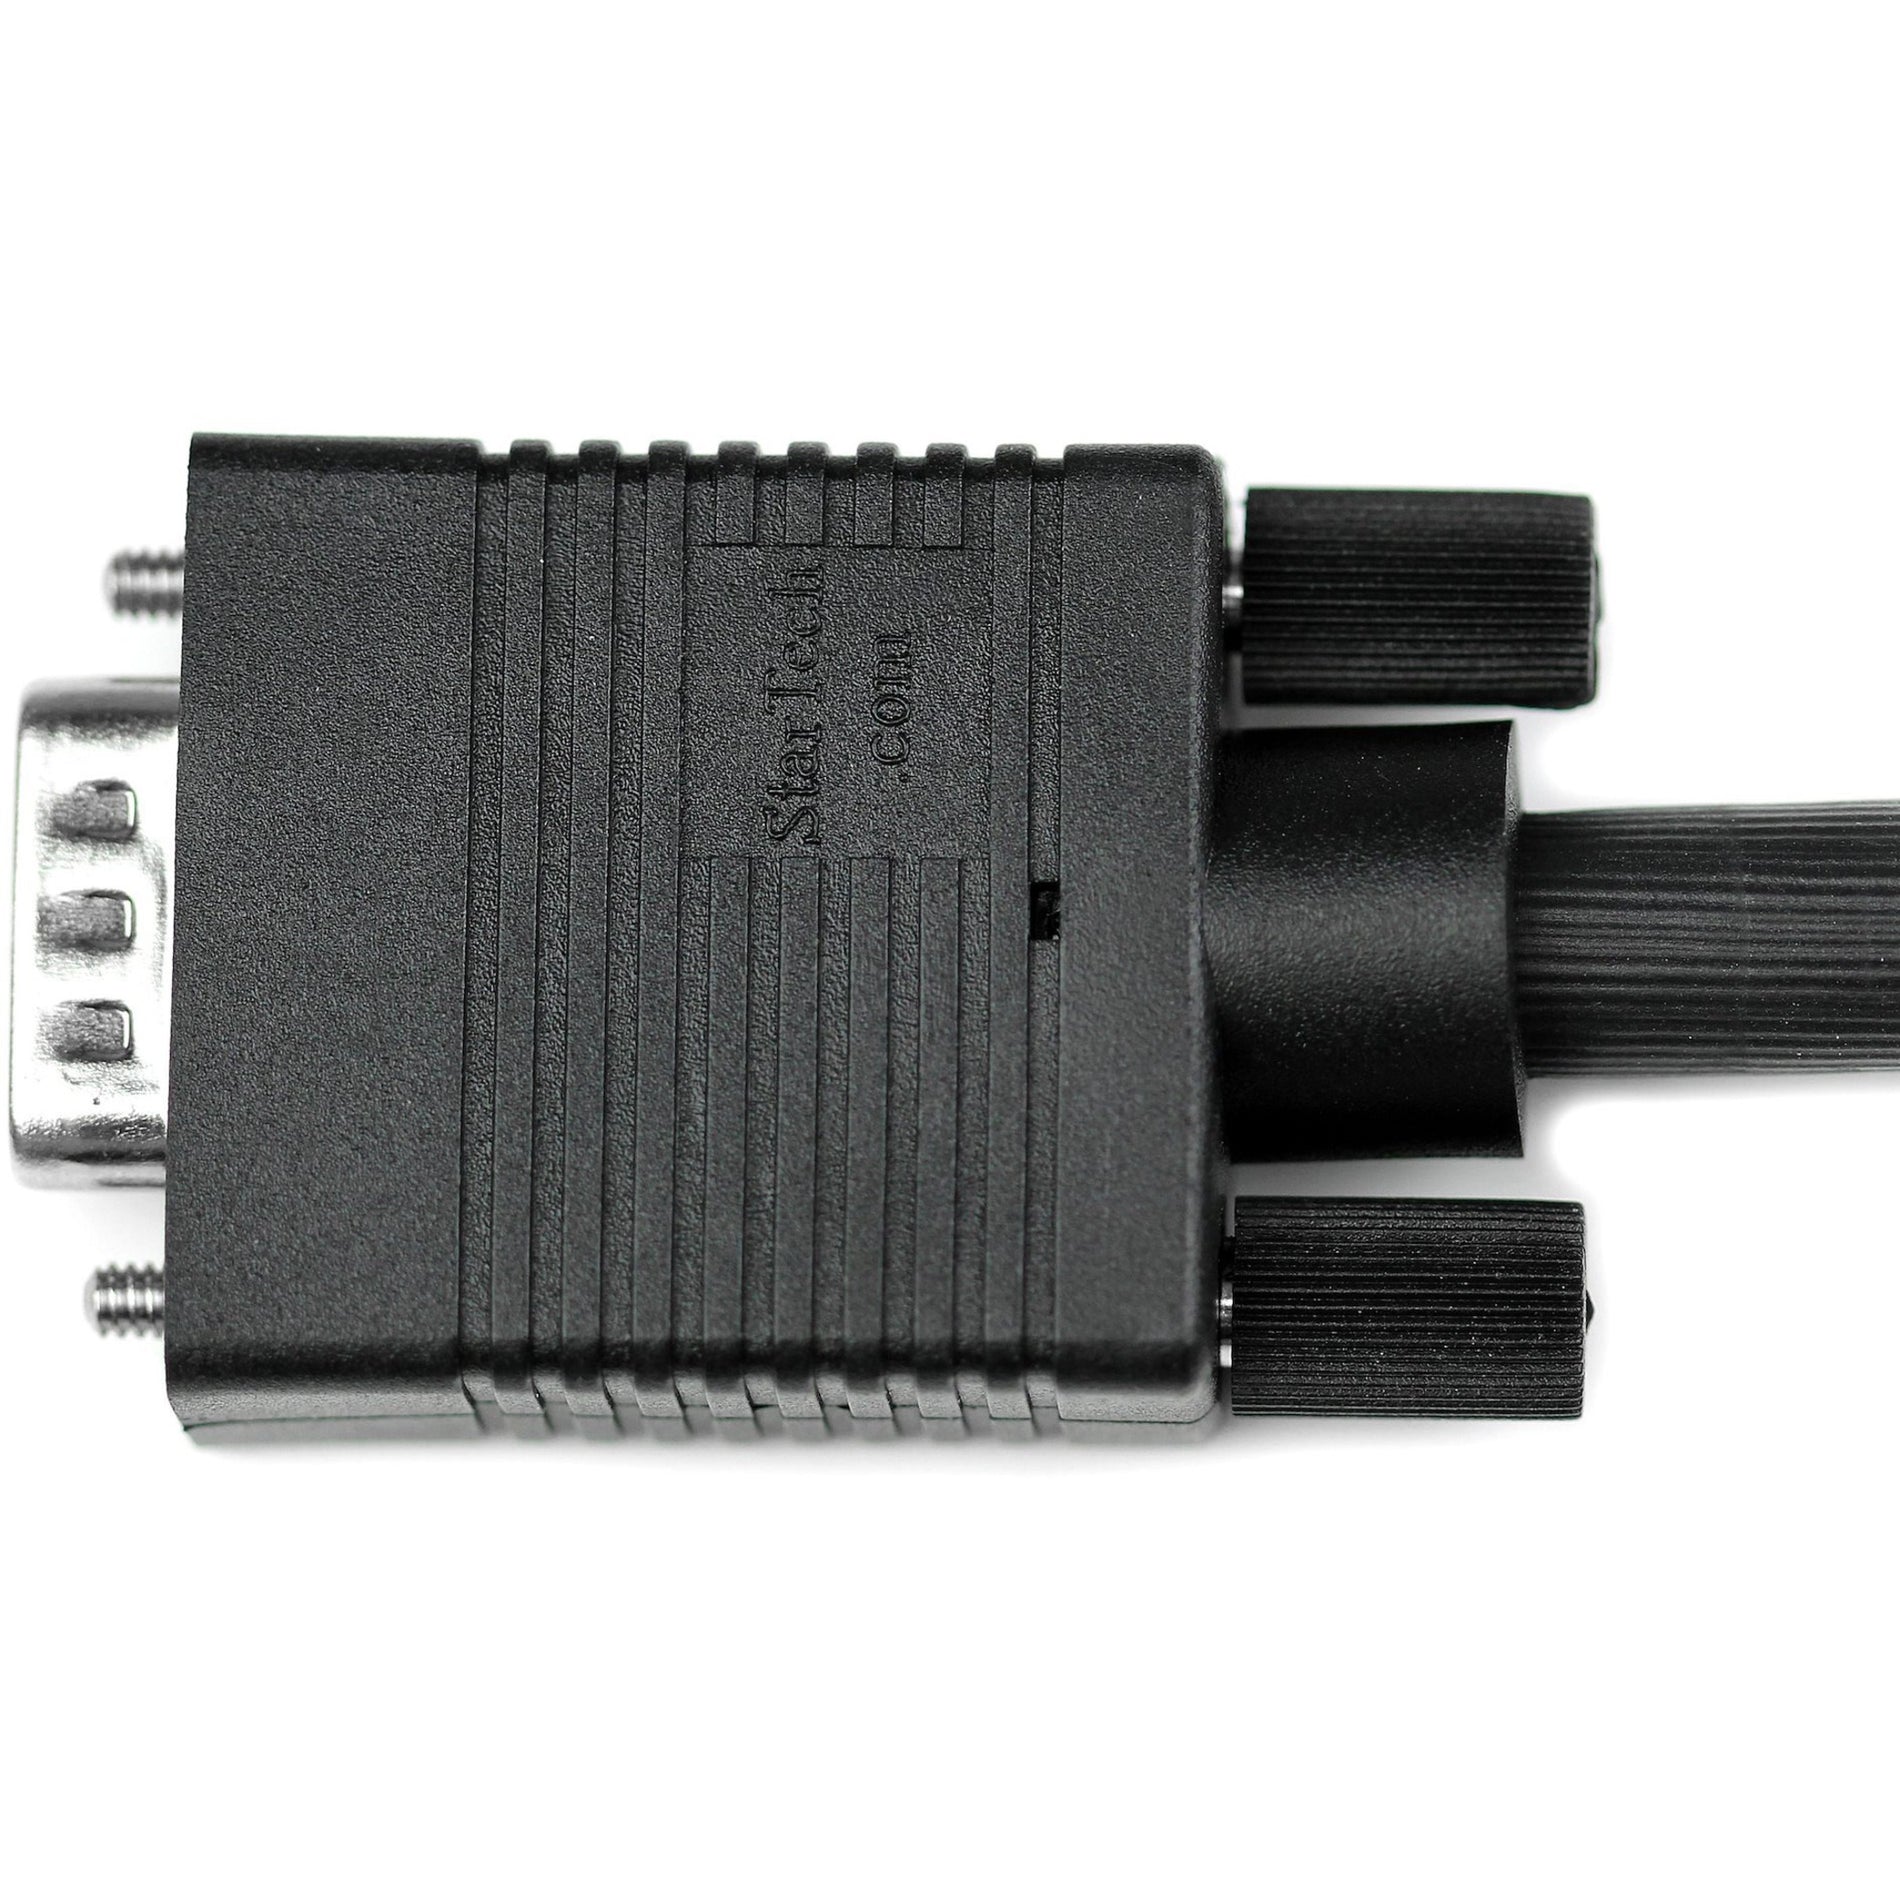 Marca: StarTech.com   Cable de monitor VGA de alta resolución con coaxial de 10 pies HD15 M/M moldeado protección EMI 1920 x 1200 negro